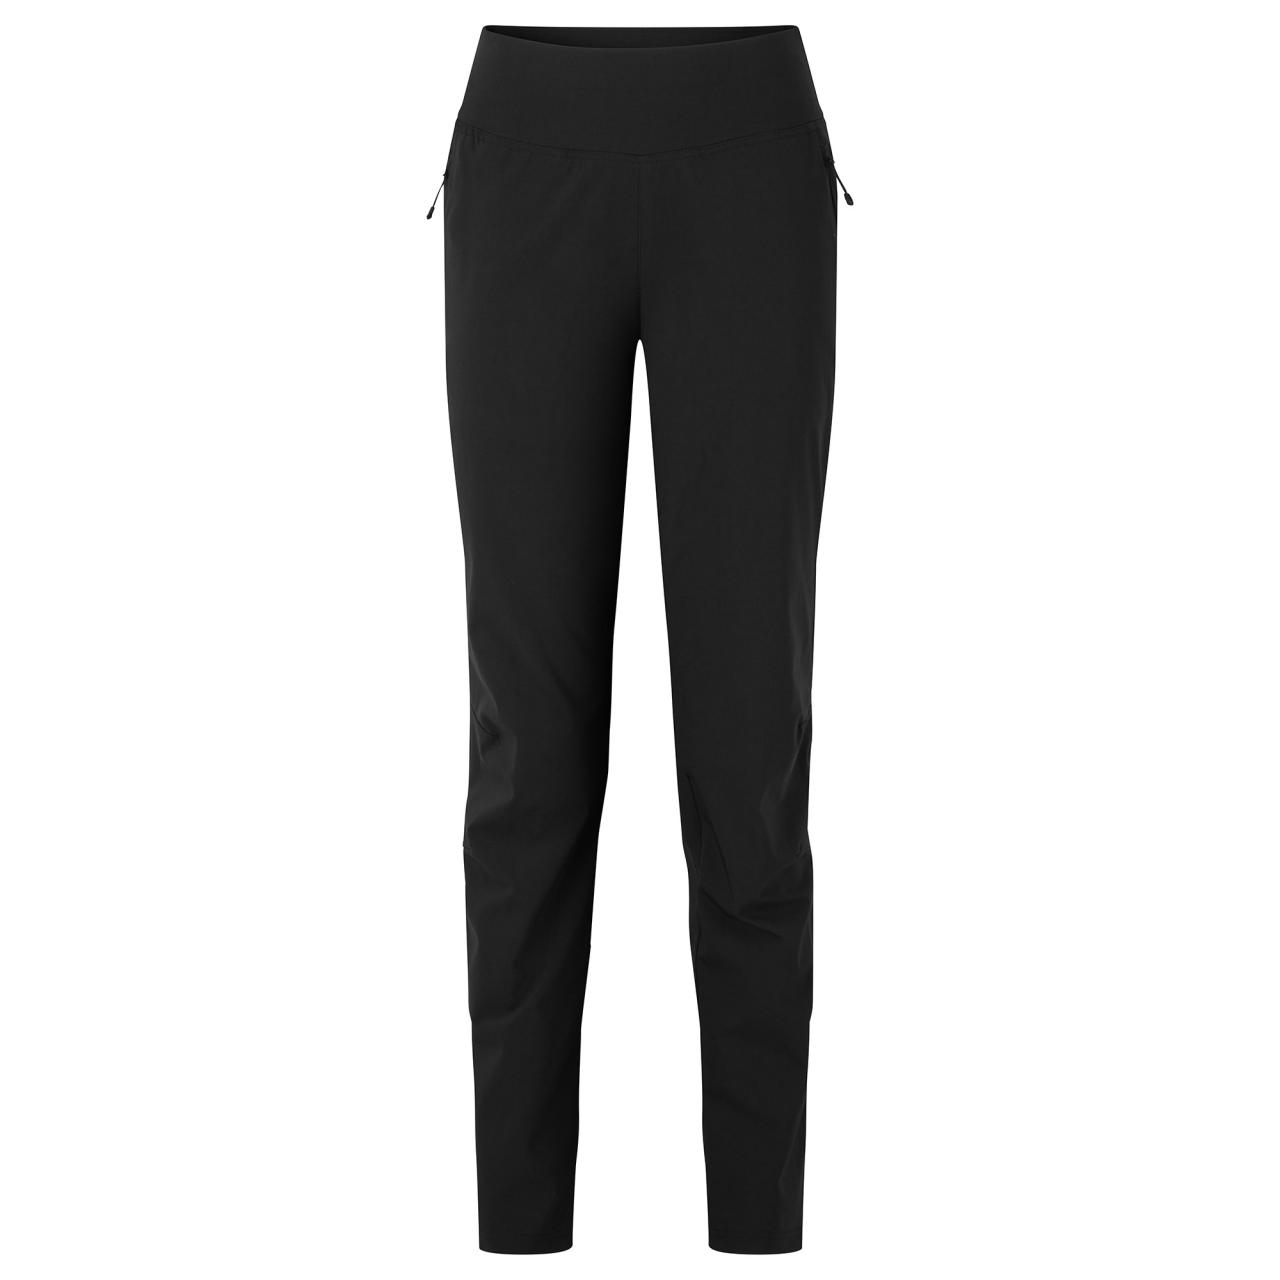 FEM TUCANA LITE PANTS REG LEG-BLACK-UK10/S dámské kalhoty černé